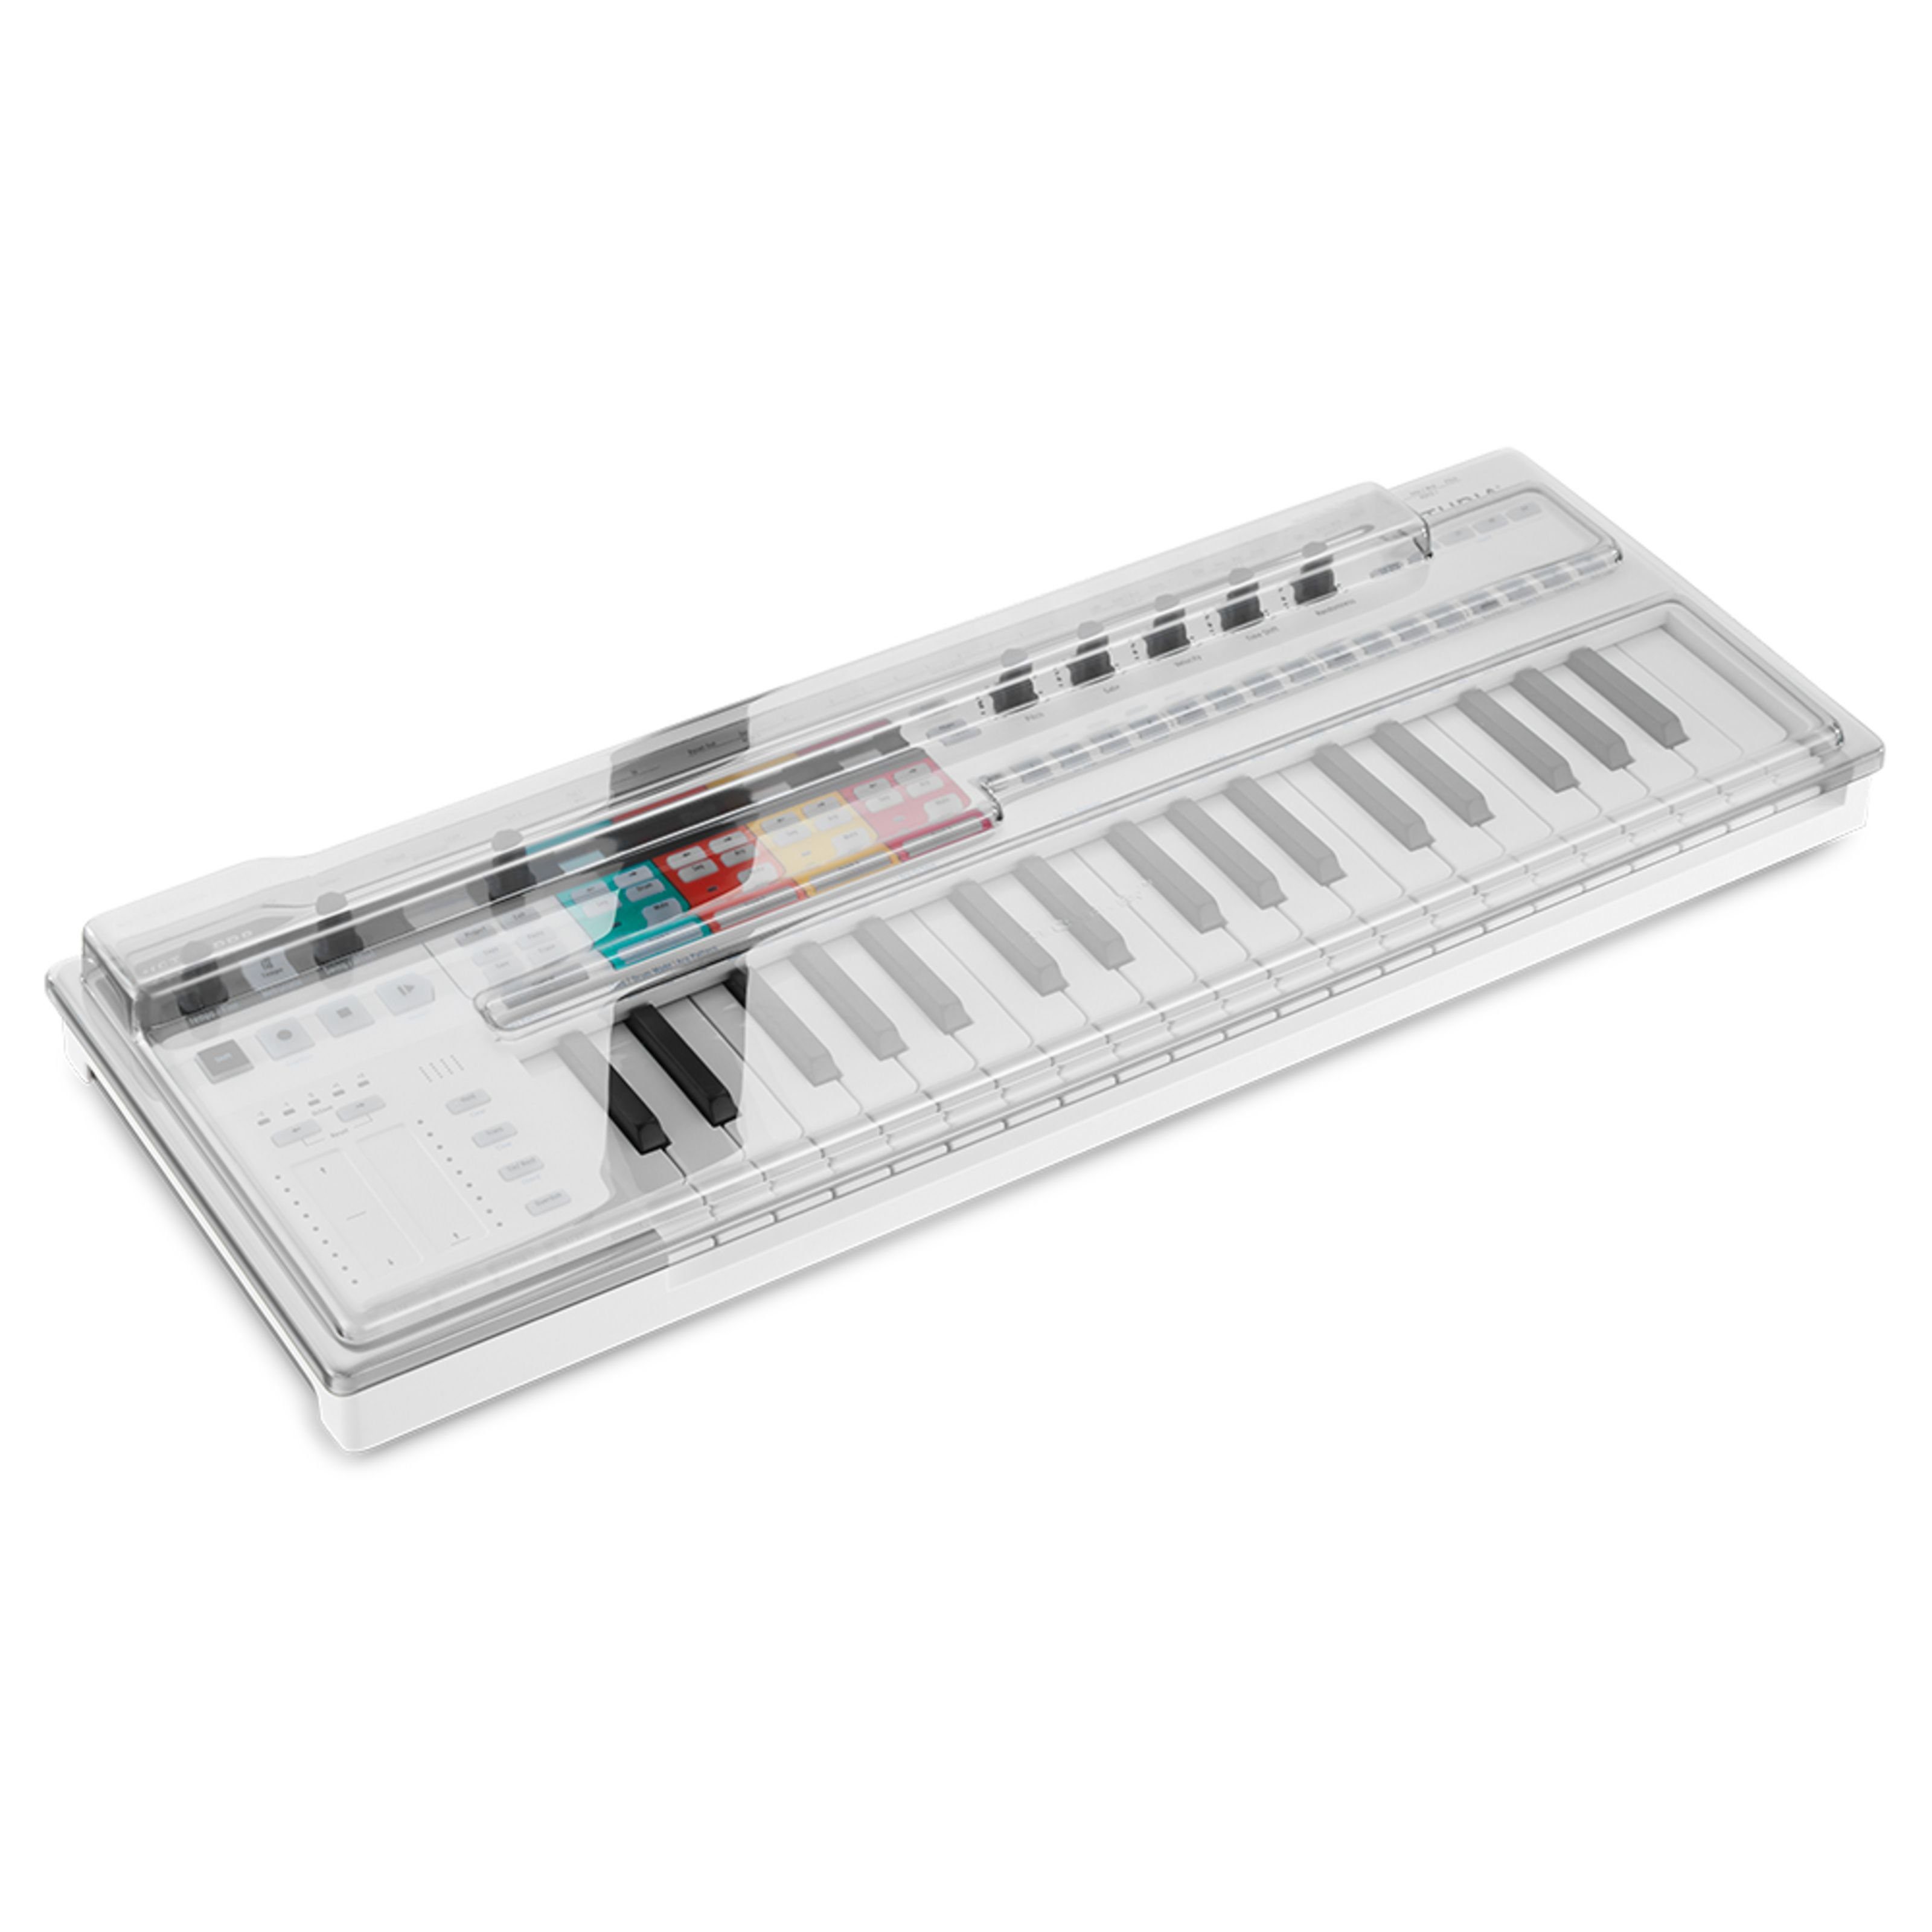 Decksaver Spielzeug-Musikinstrument, Arturia Keystep Pro Cover - Abdeckung für Keyboards